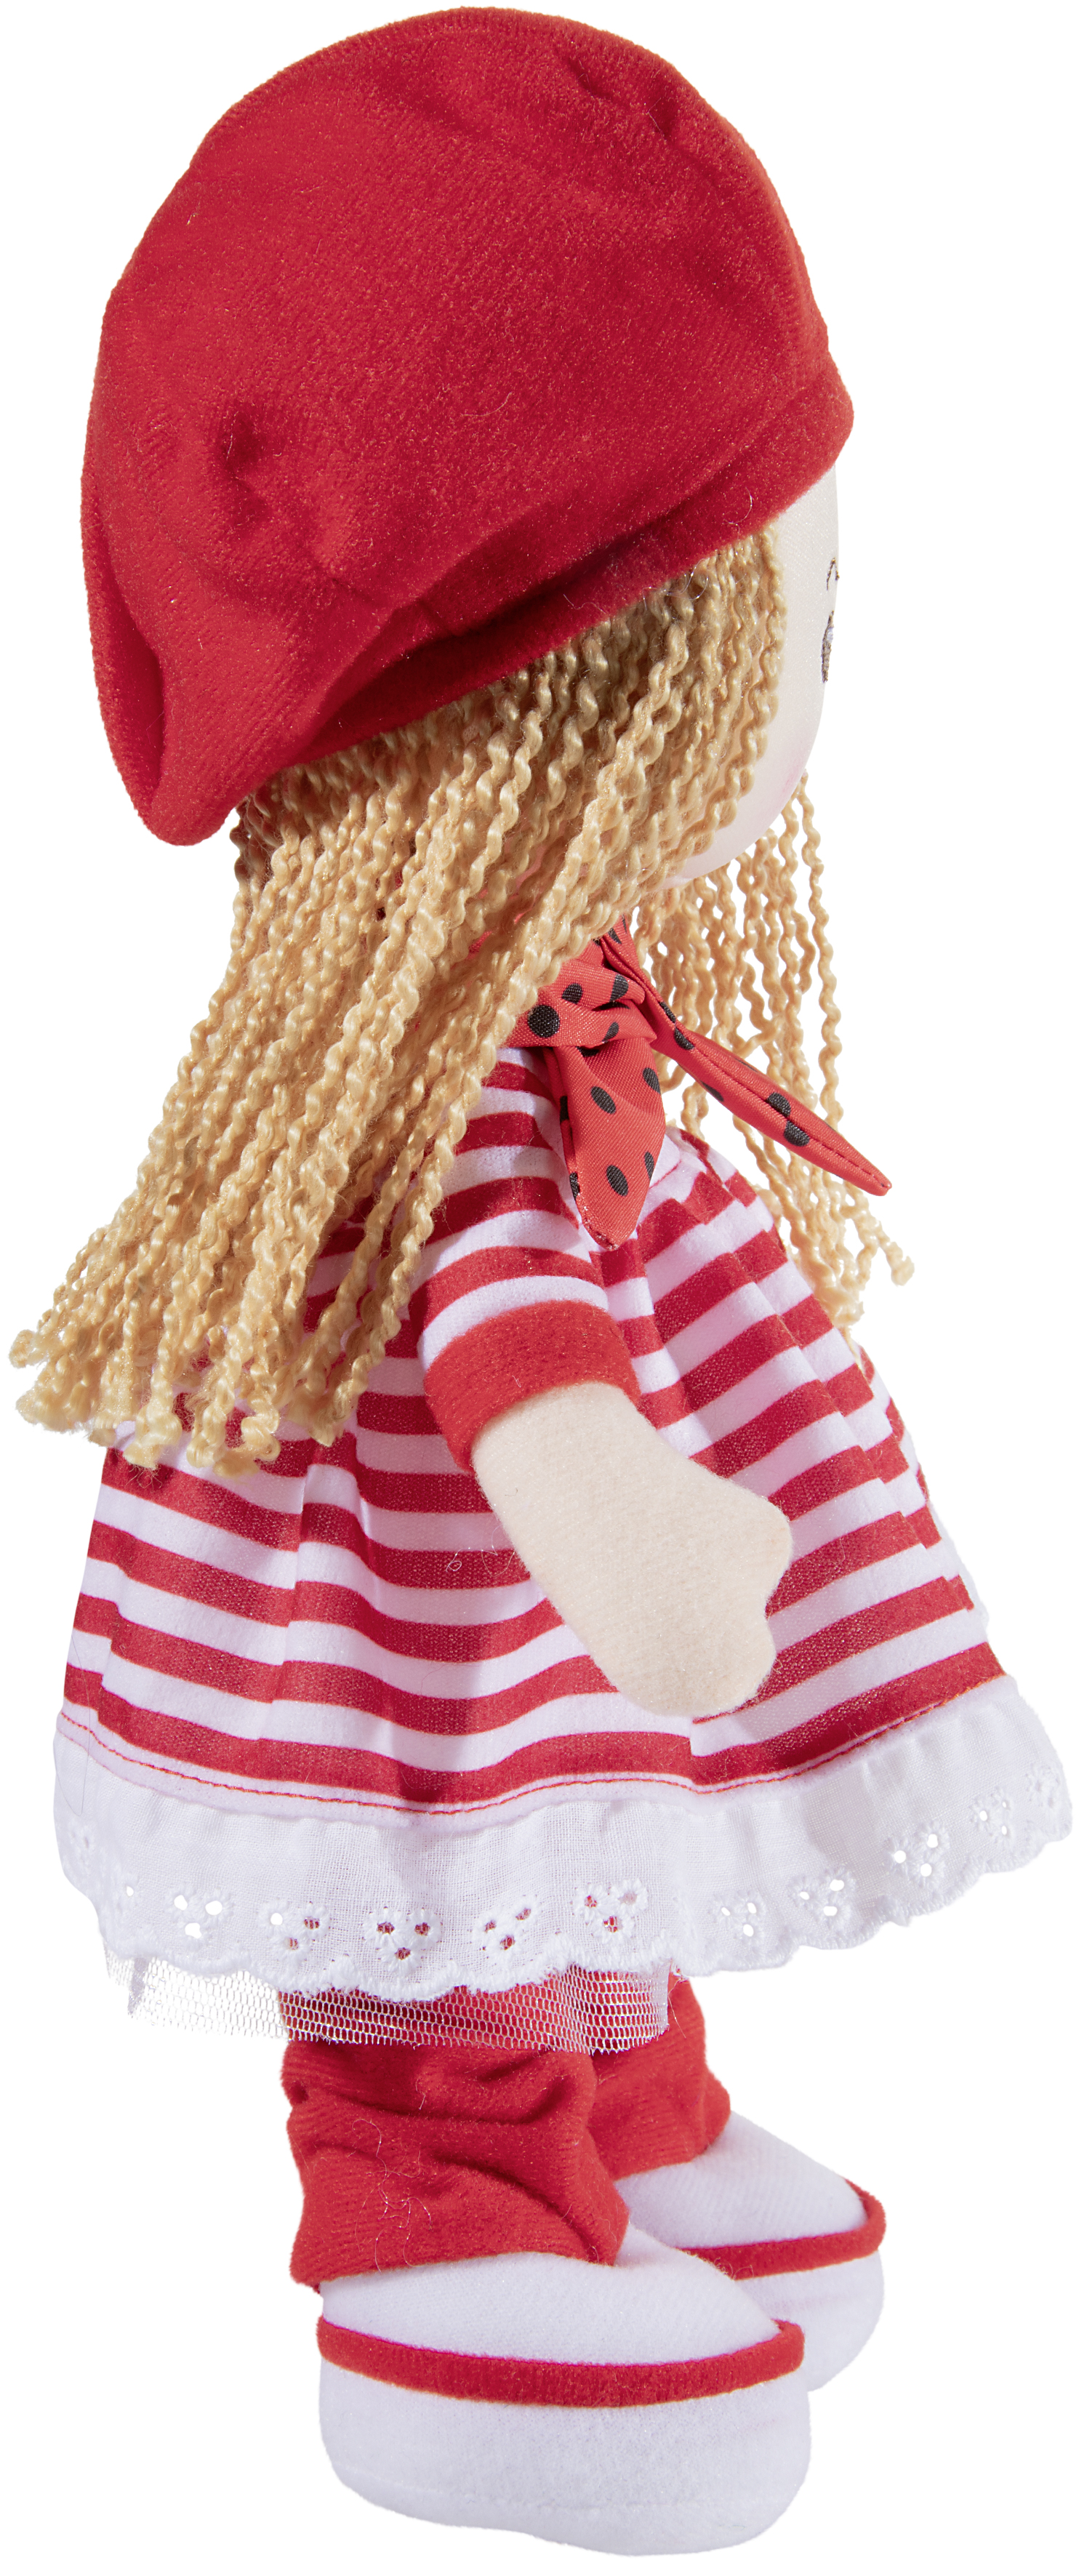 Heunec Poupetta Käferkind mit blonden Haaren, roter Mütze und rot-weiß gestreiftem Kleidchen seitlich